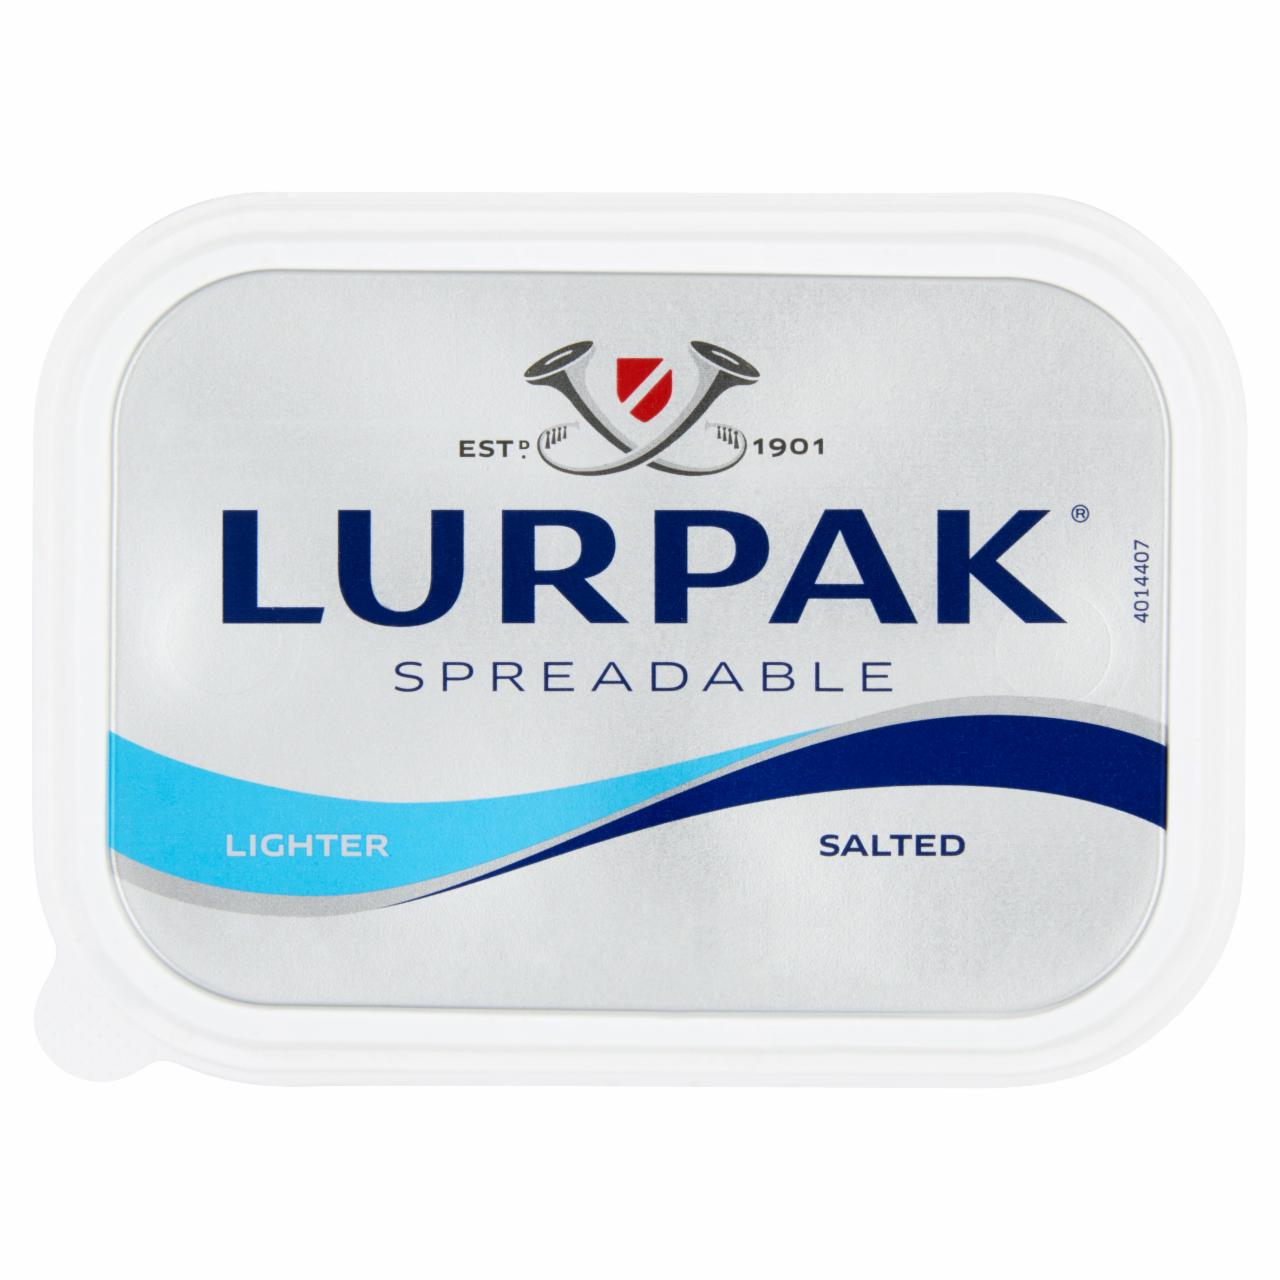 Képek - Lurpak enyhén sózott csökkentett zsírtartalmú kenhető keverék készítmény 200 g